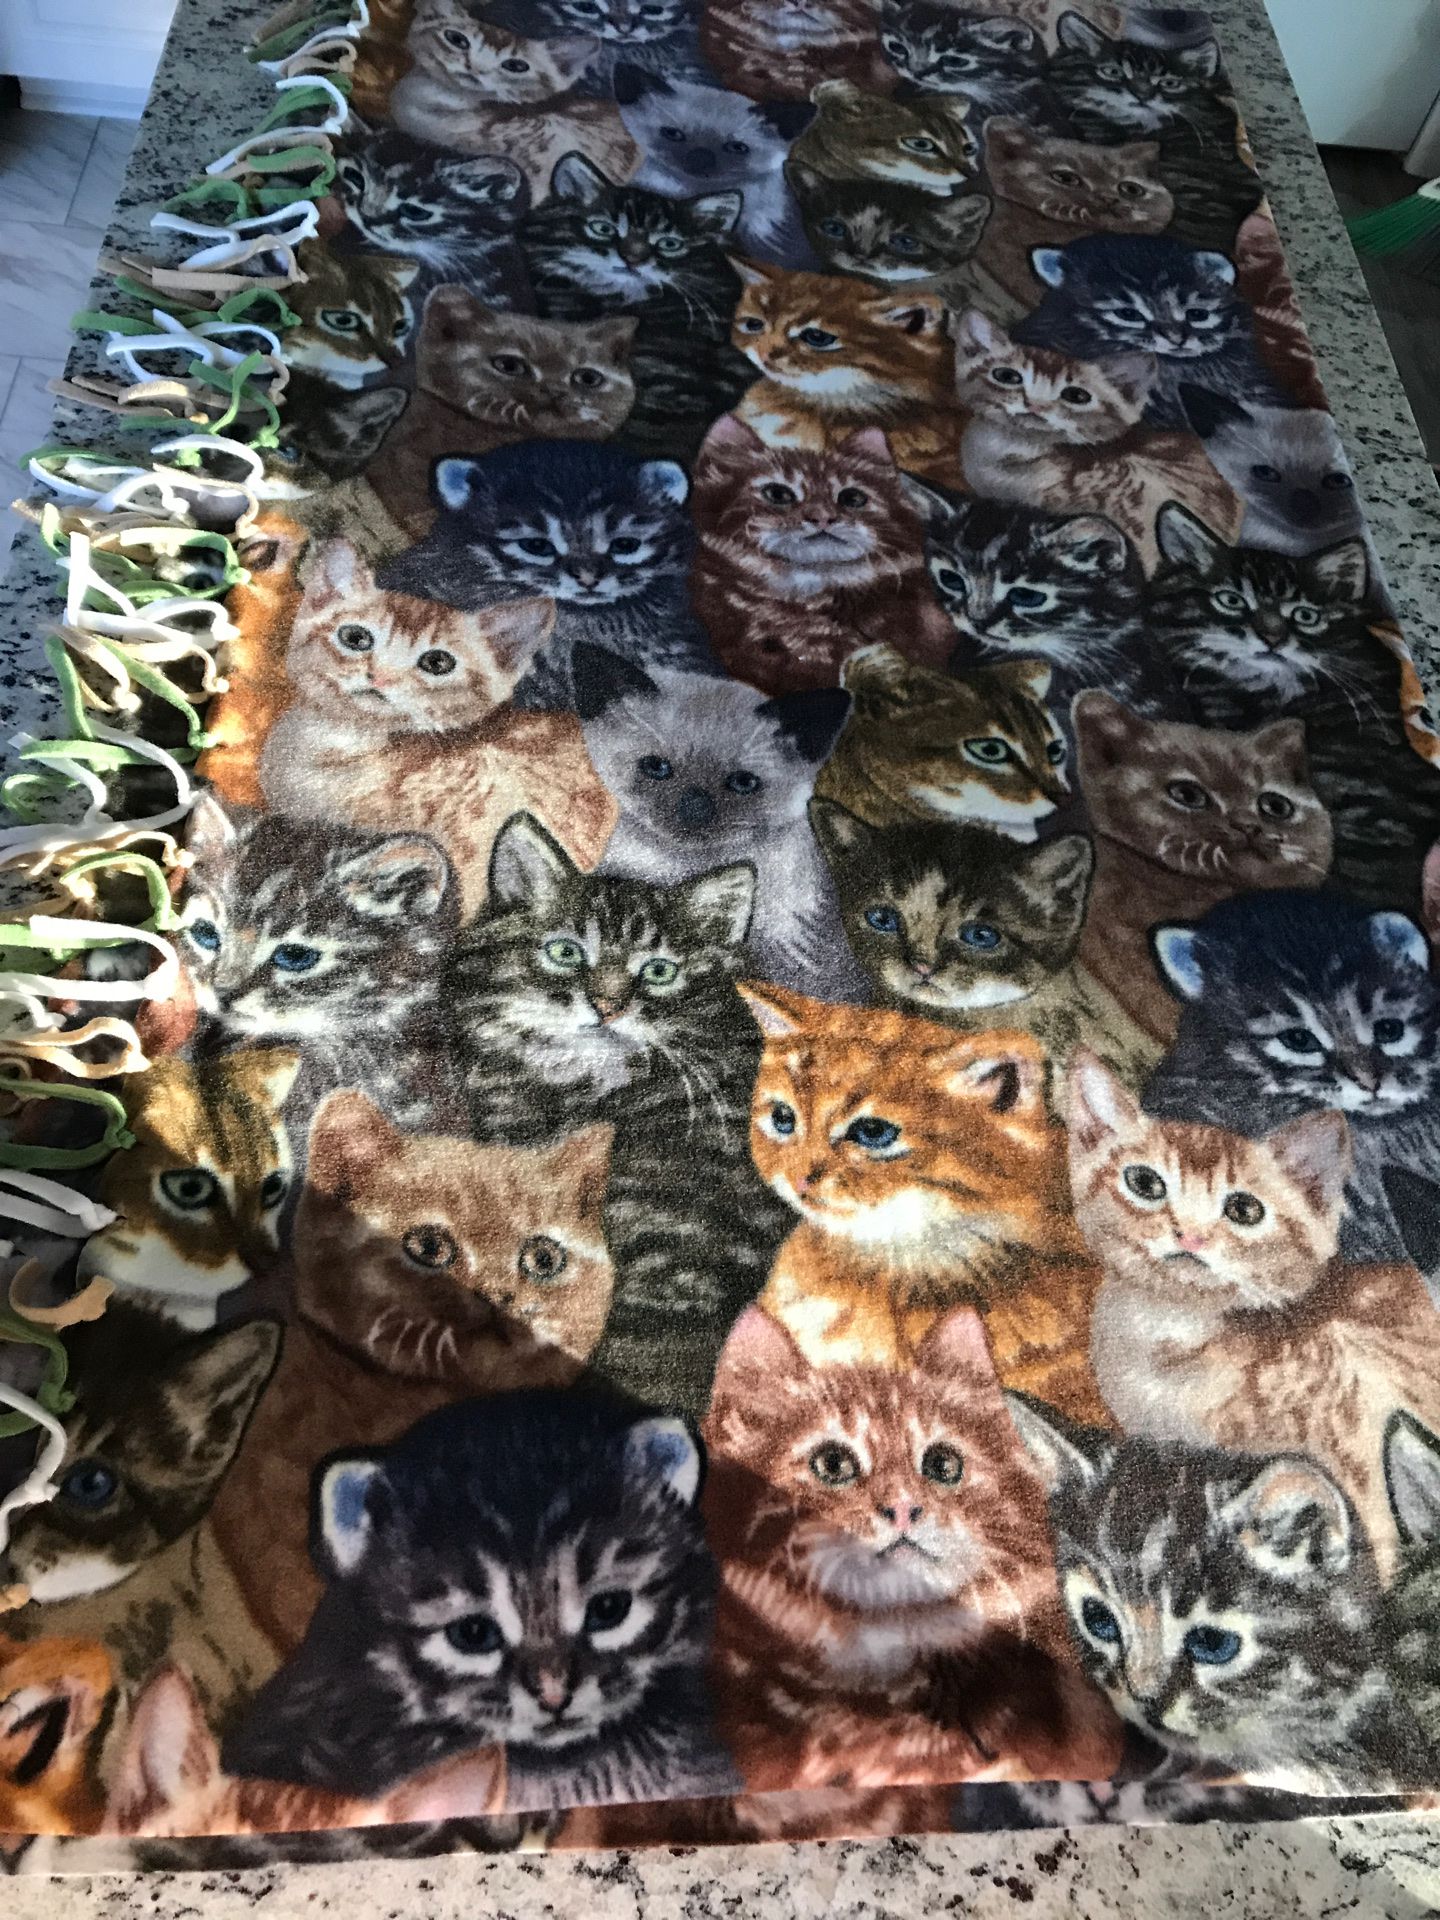 Handcrafted fleece blanket 5’ x 6’ Cats kittens